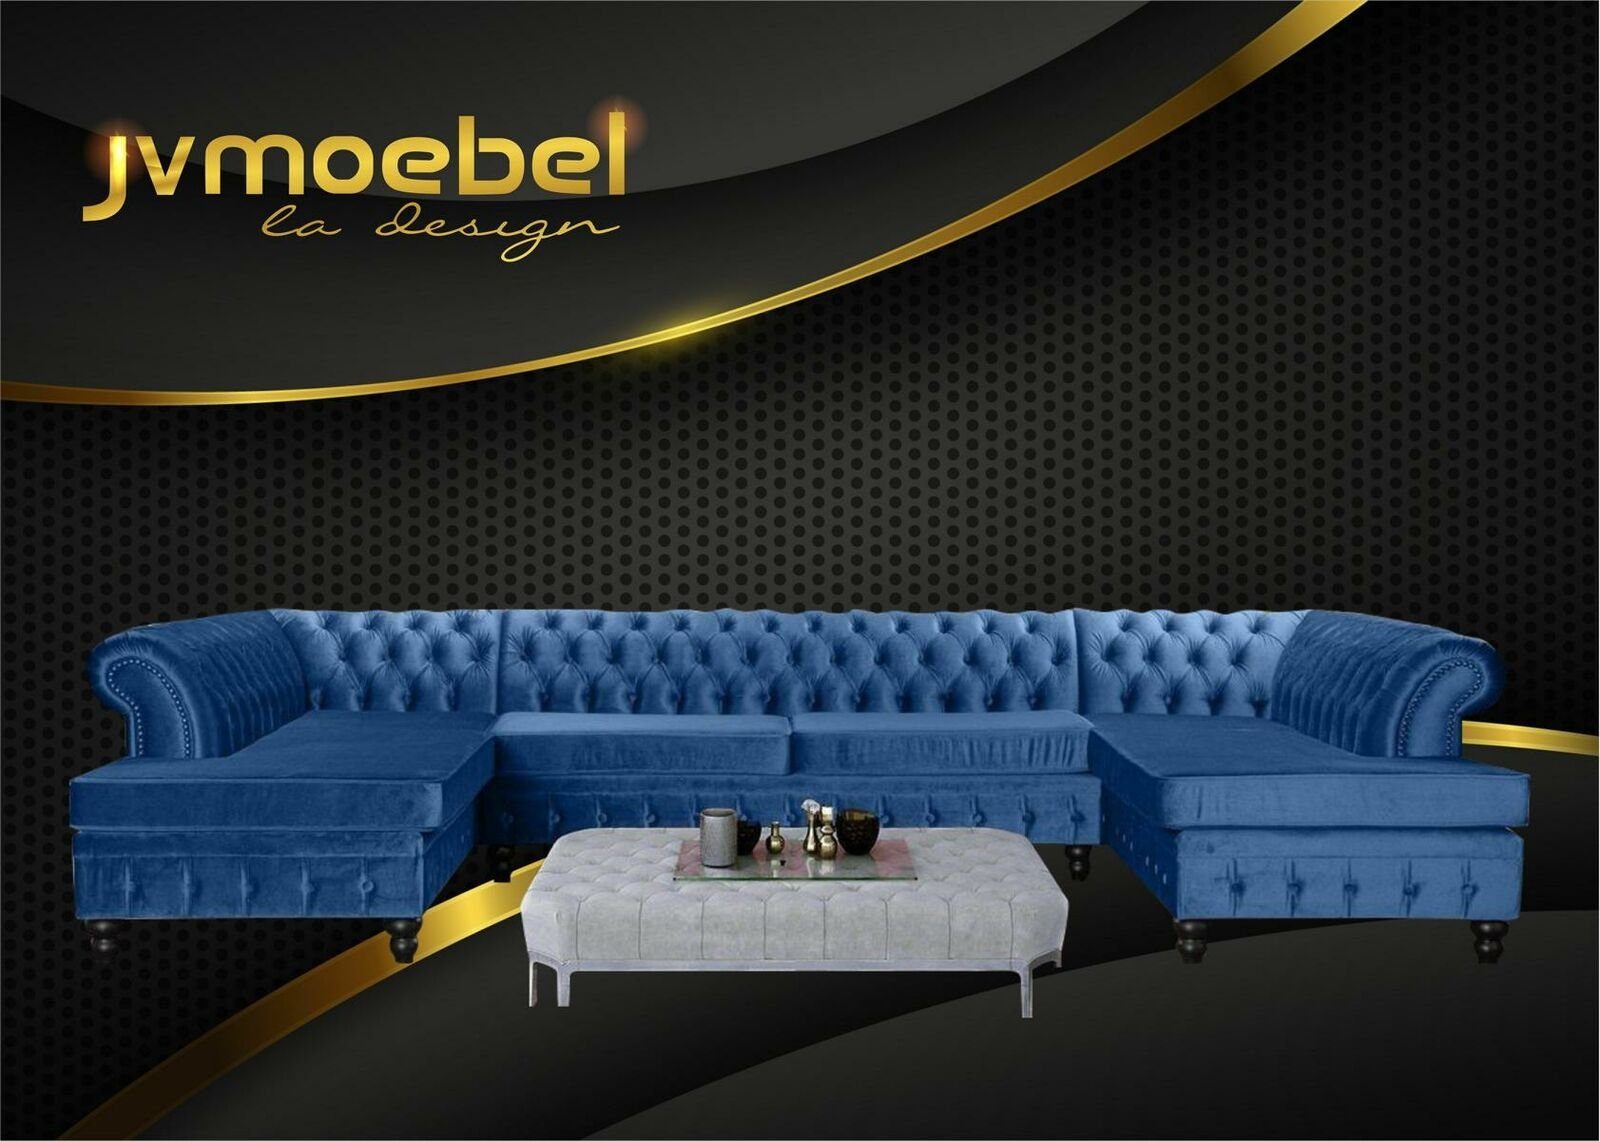 JVmoebel Ecksofa, Set Luxury Modern Ecksofa U-Form Chesterfield und Couchtisch Blau/Hellgrau